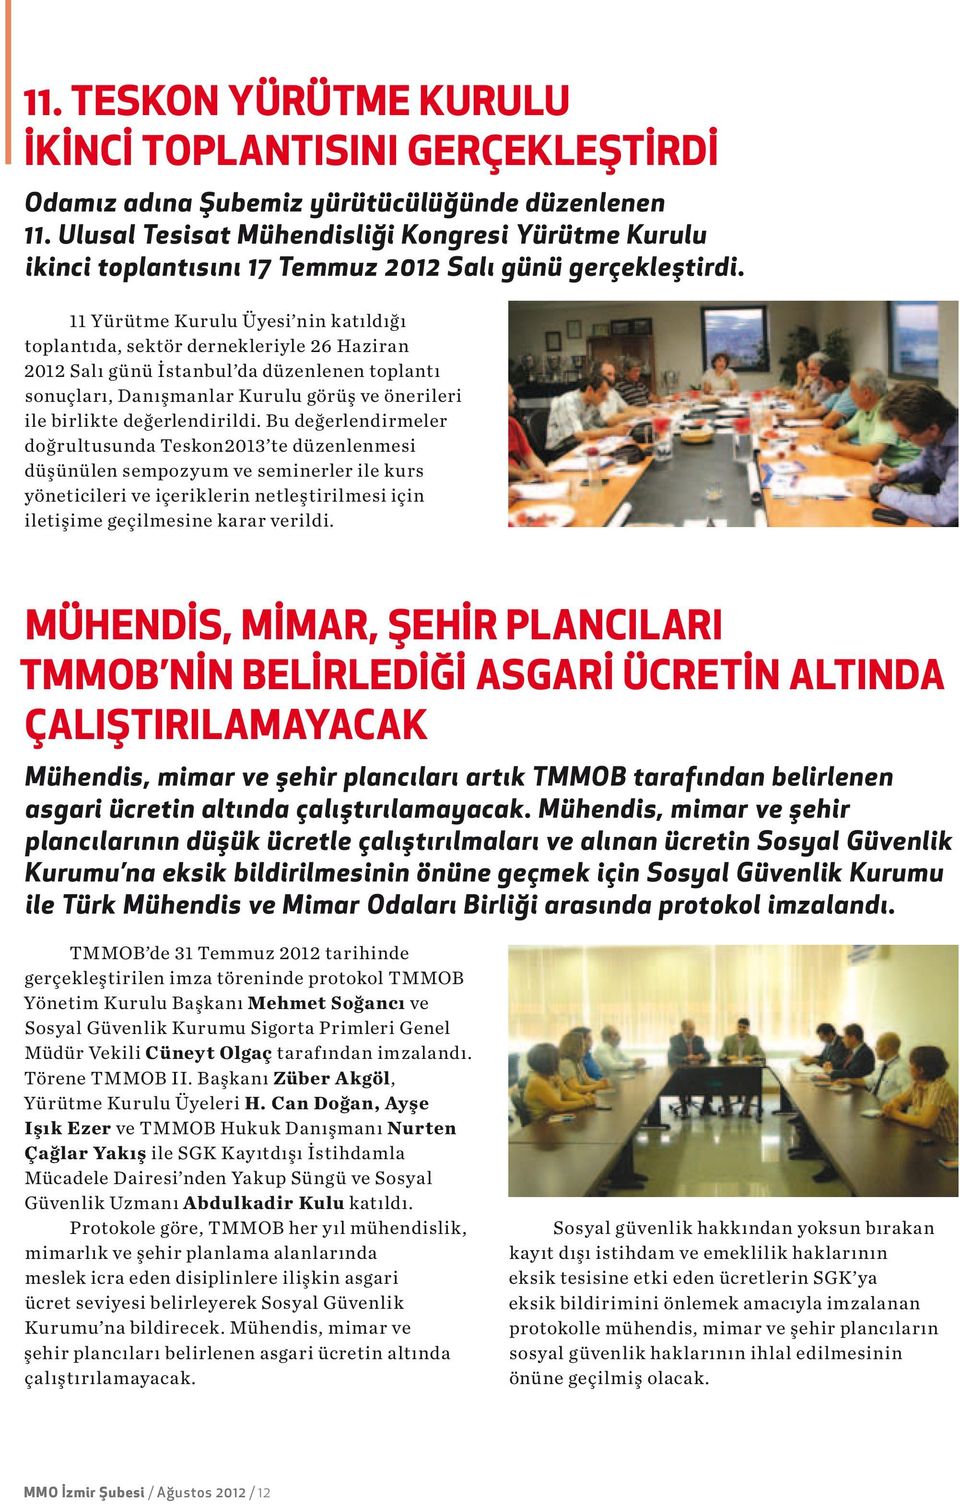 11 Yürütme Kurulu Üyesi nin katıldığı toplantıda, sektör dernekleriyle 26 Haziran 2012 Salı günü İstanbul da düzenlenen toplantı sonuçları, Danışmanlar Kurulu görüş ve önerileri ile birlikte